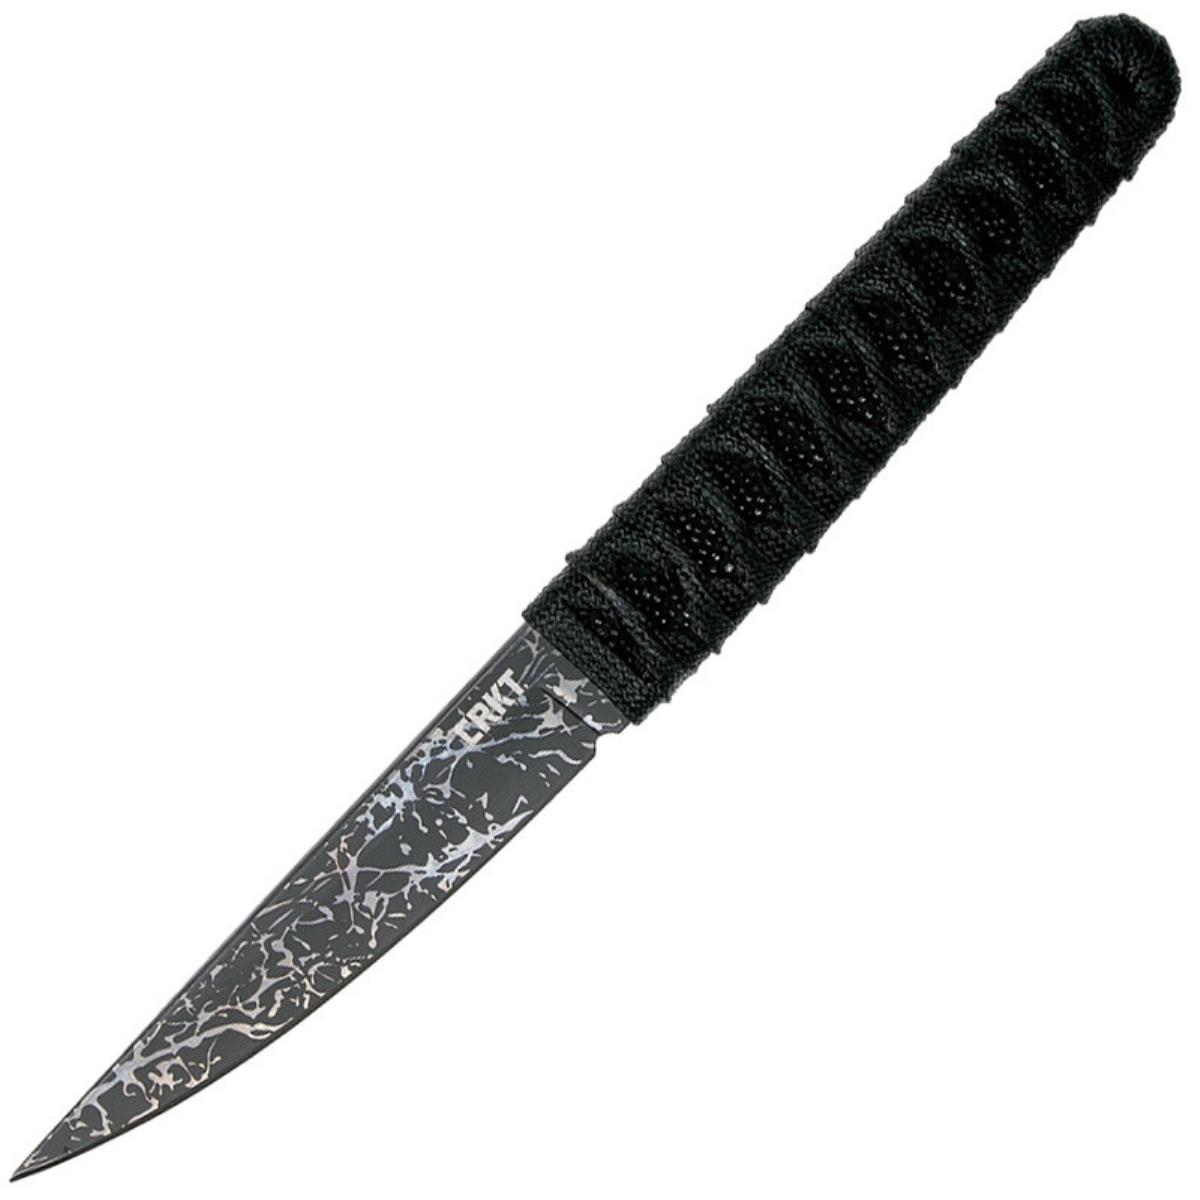 Нож Obake с фикс. клинком, рук-ть паракорд, клинок 8Cr14MoV, пластик. ножны  CRKT_2367 трость с клинком медведь